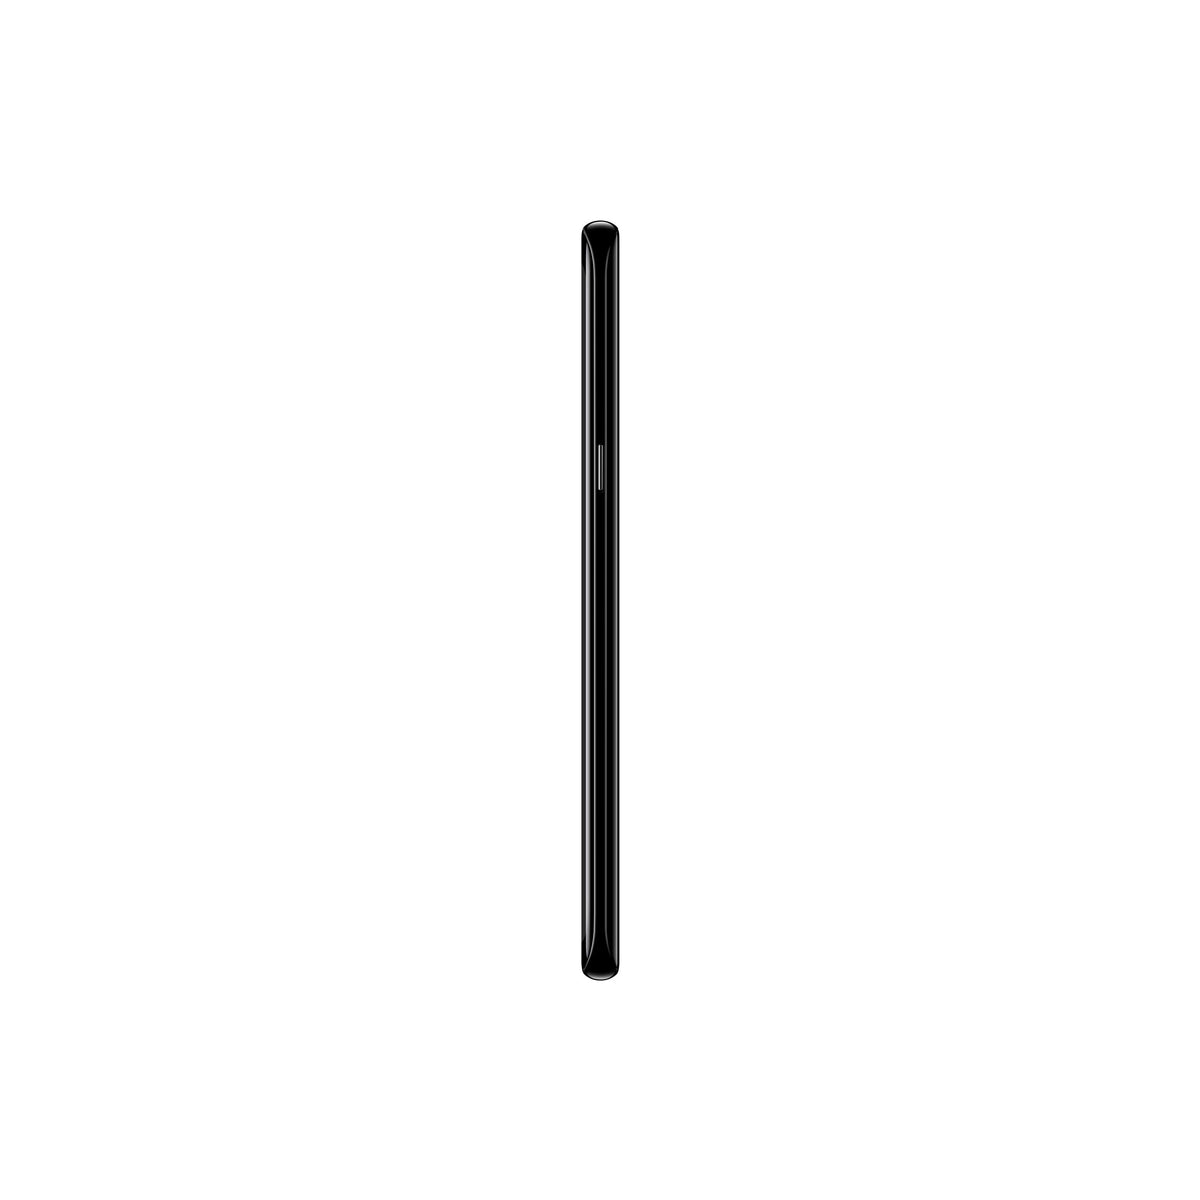 Mobilní telefon Samsung Galaxy S8+ 4GB/64GB, černá POUŽITÉ